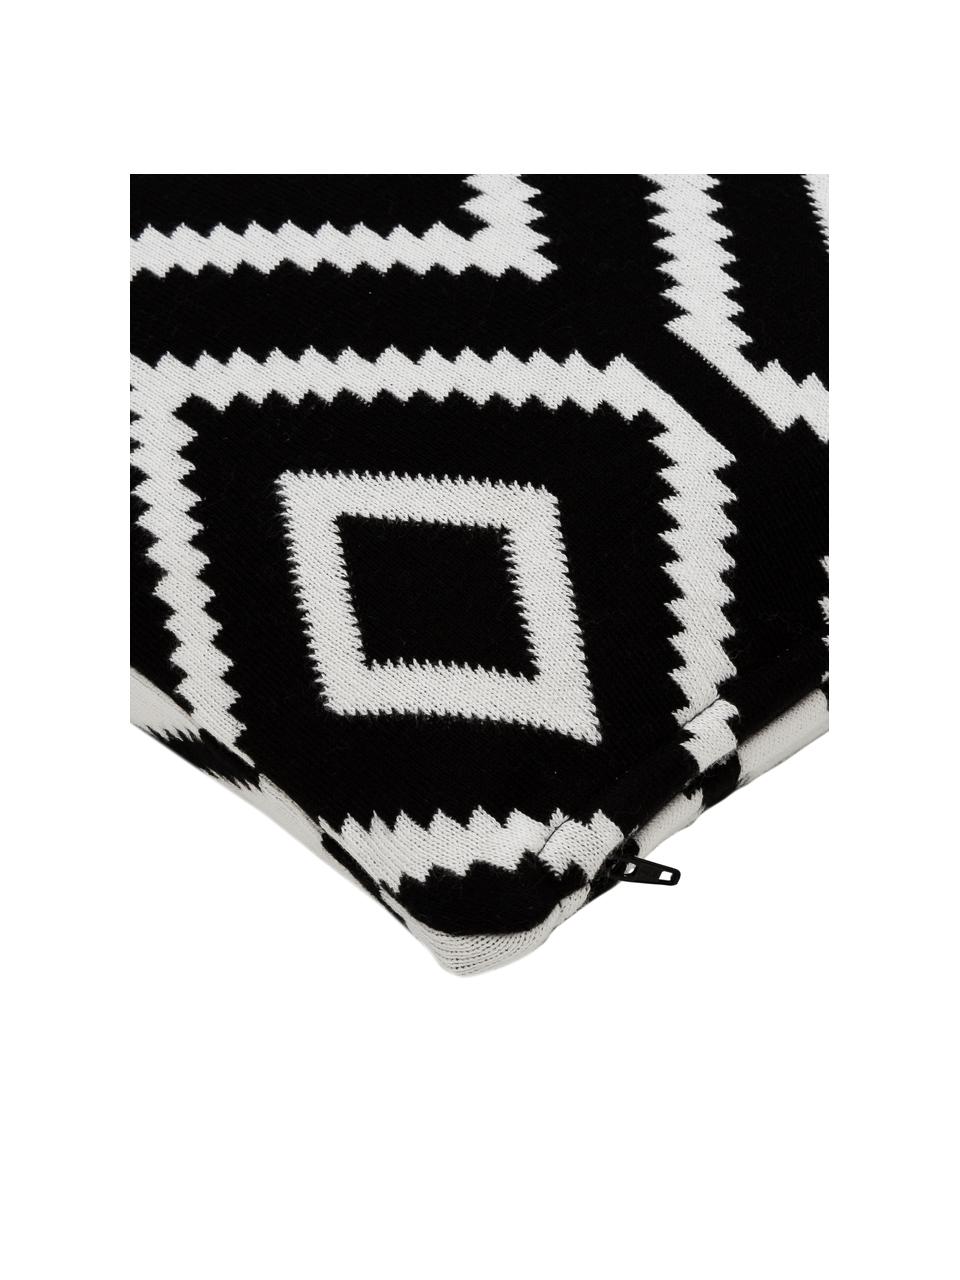 Gebreide omkeerbare kussenhoes Chuck met grafisch patroon, 100% katoen, Zwart, crèmewit, B 40 x L 40 cm